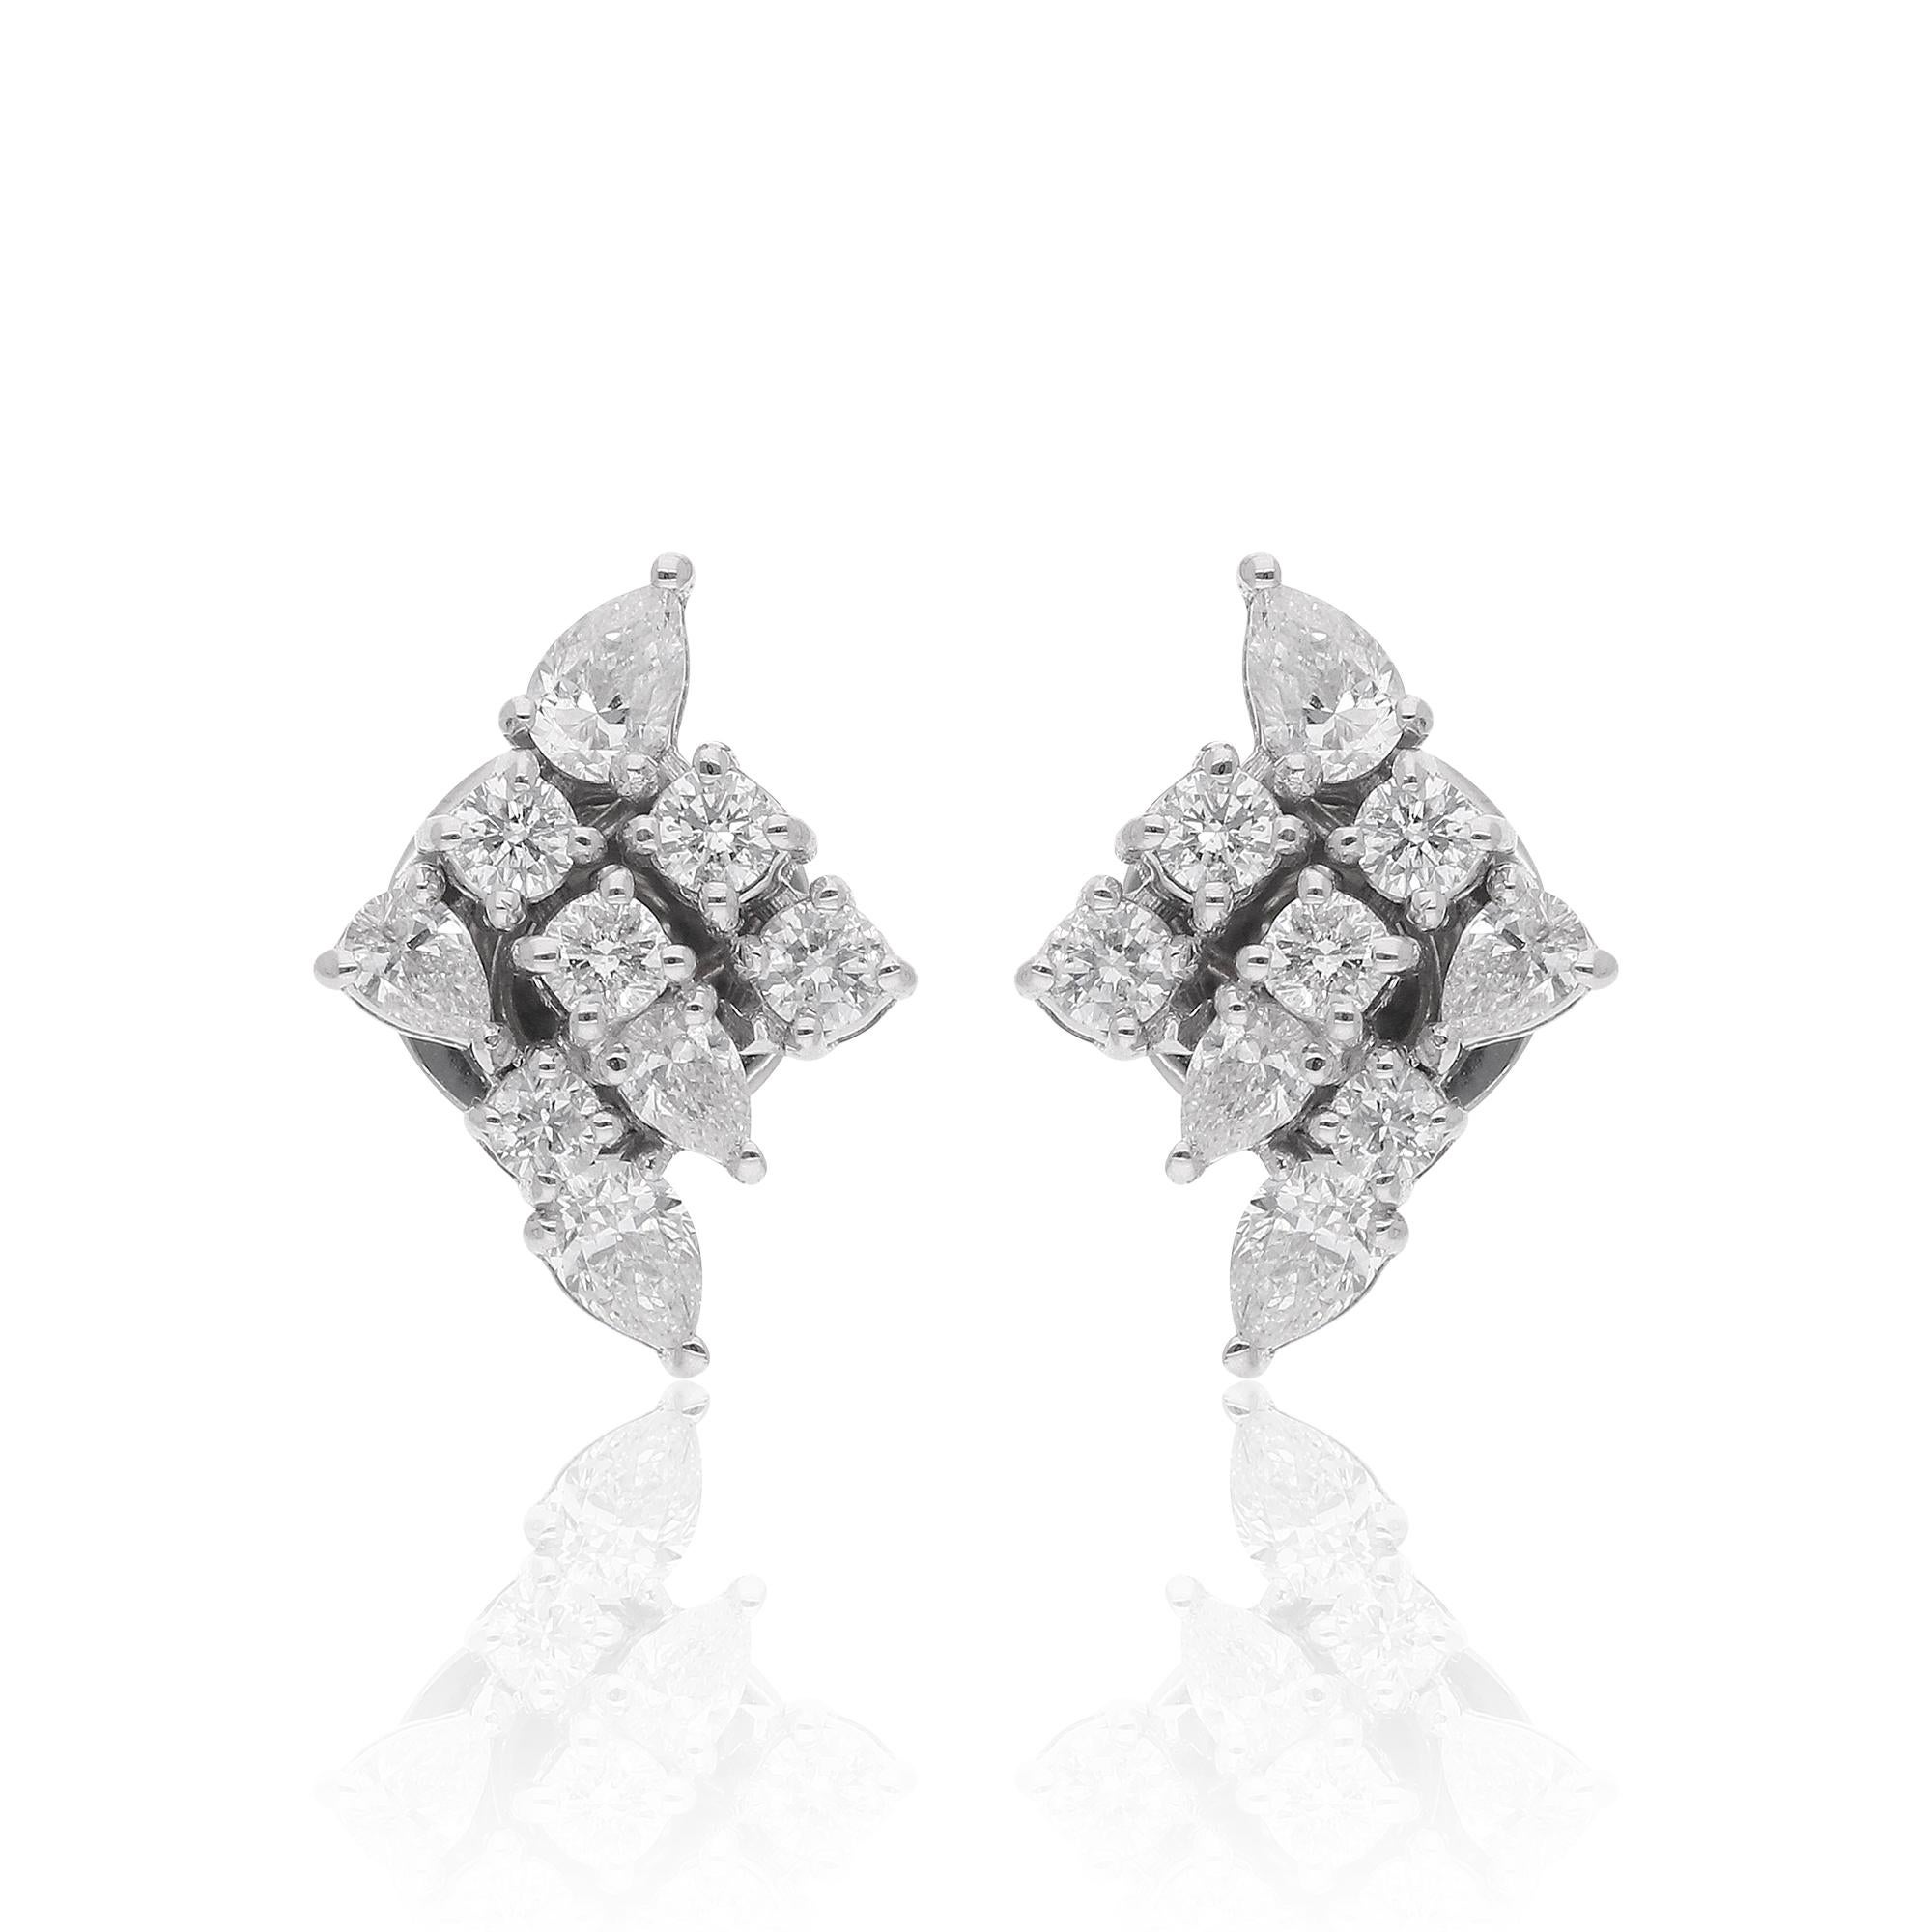 Die birnenförmigen Diamanten strahlen mit ihren anmutigen Kurven und brillanten Facetten Raffinesse aus, während die runden Diamanten einen Hauch von Brillanz und Funkeln hinzufügen. Zusammen bilden sie ein faszinierendes Ensemble, das jedes Outfit